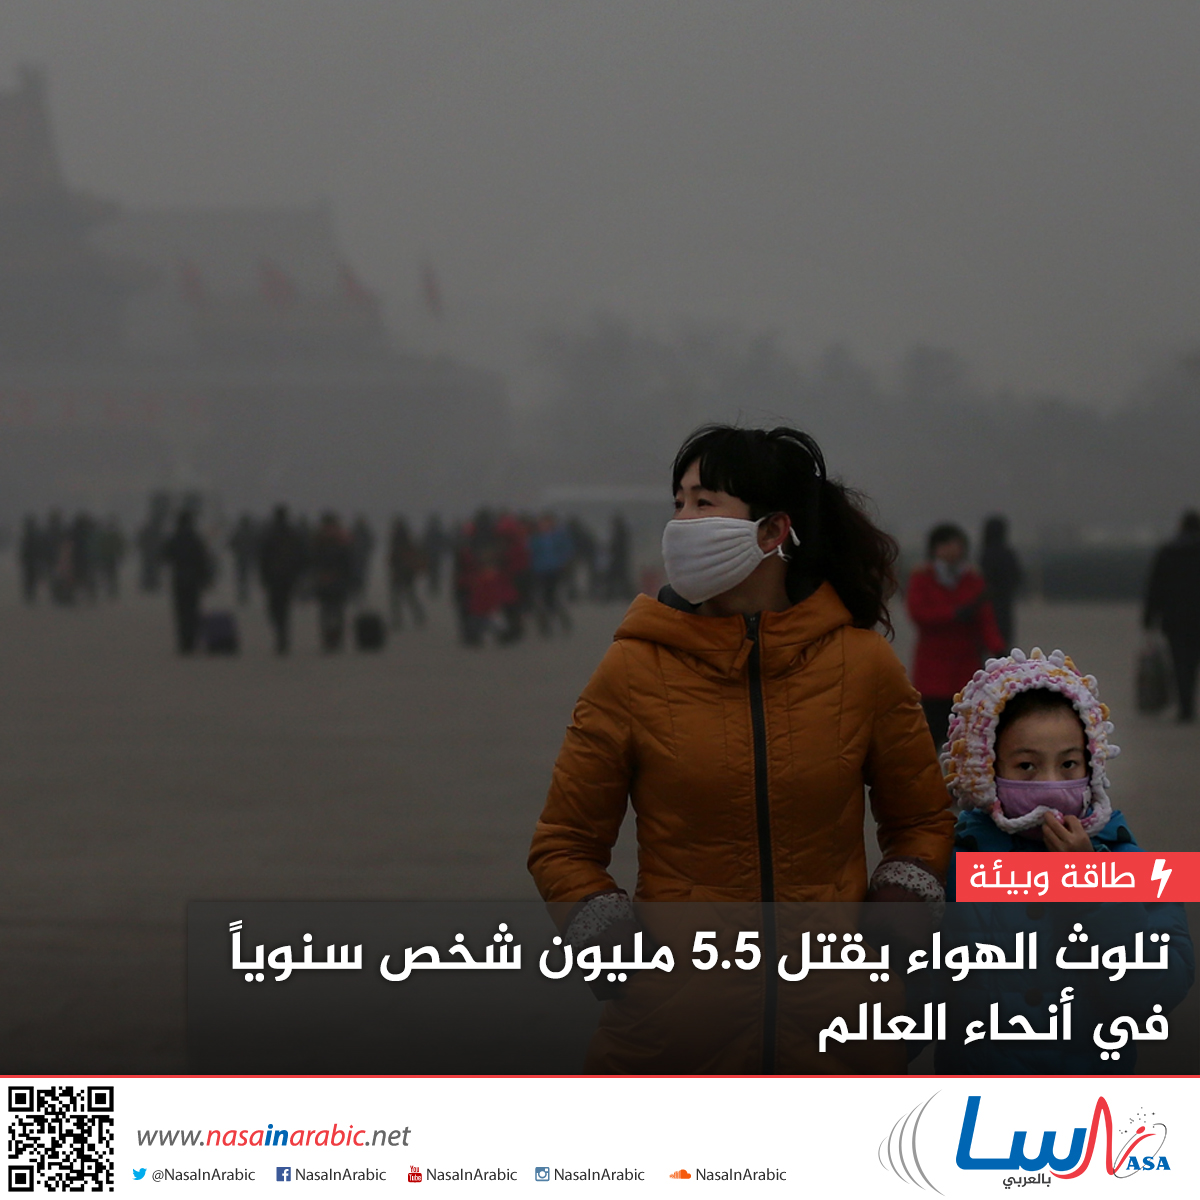 تلوث الهواء يقتل 5.5 مليون شخص سنوياً في أنحاء العالم